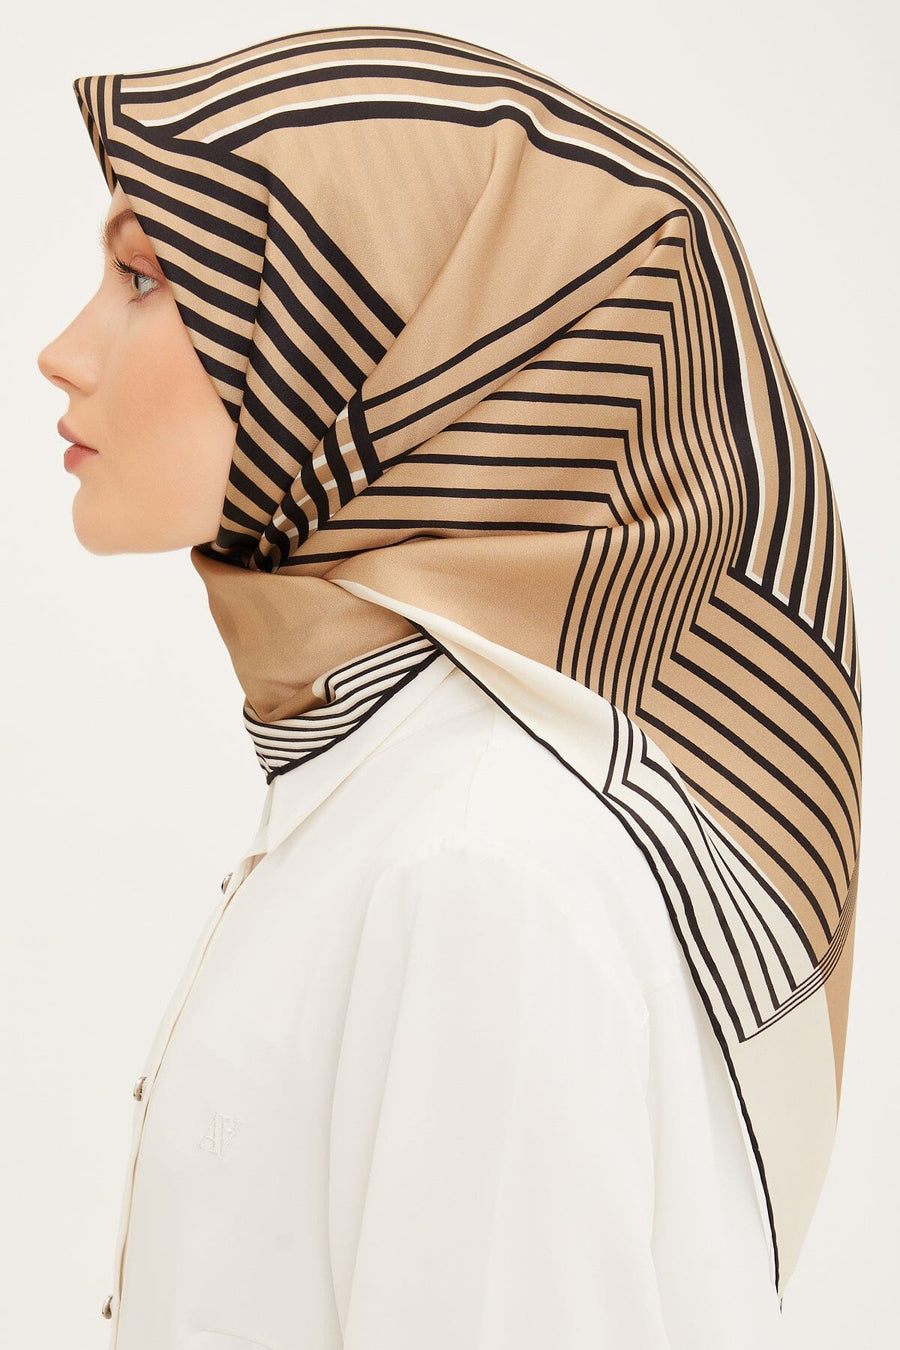 Armine Metro Square Silk Scarf #35 Silk Hijabs,Armine Armine 